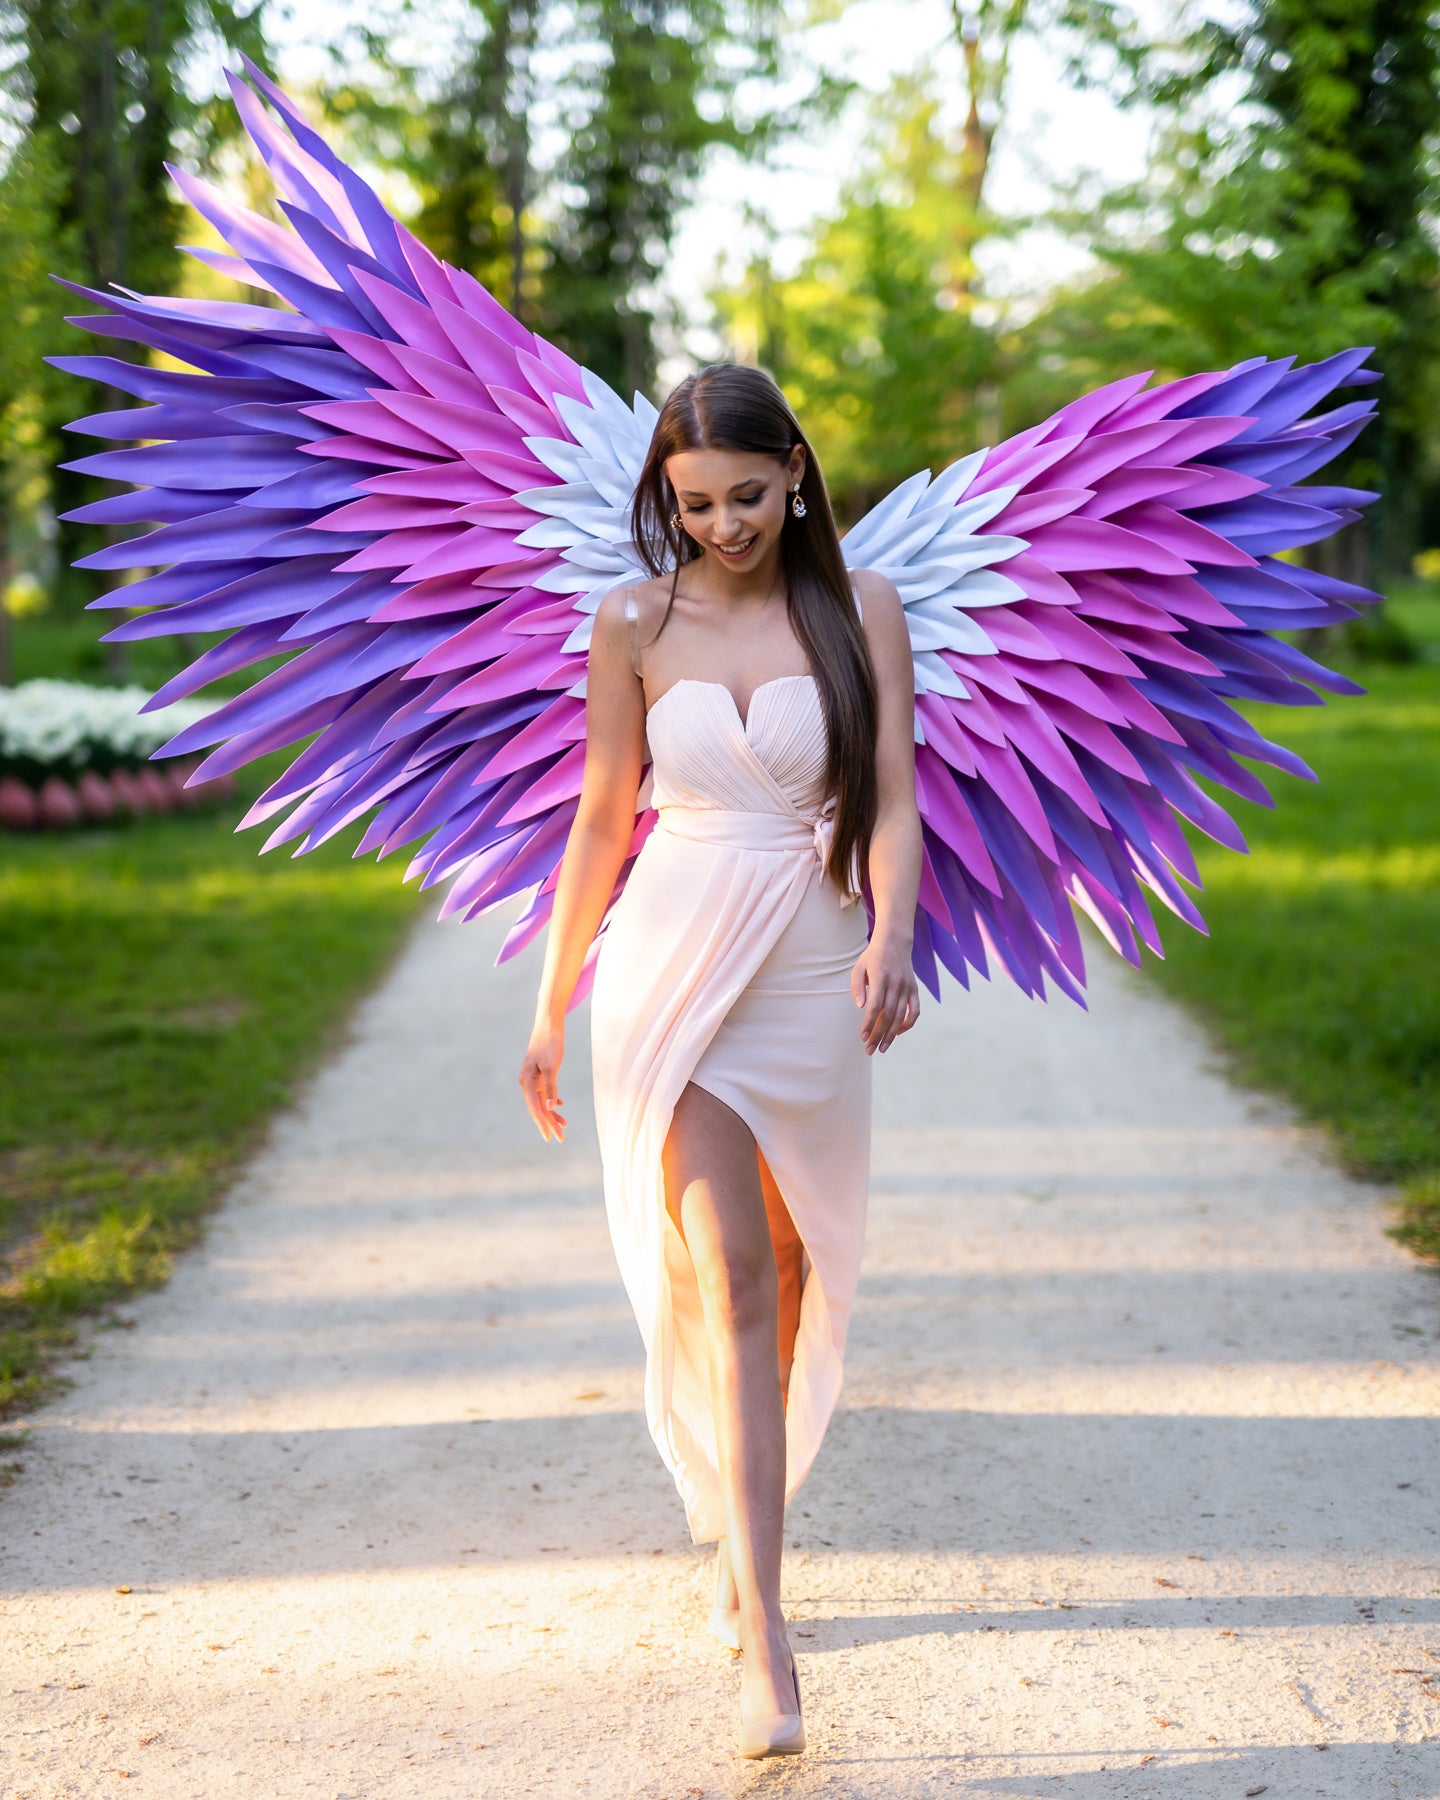 Kolorowe skrzydła anioła do sesji zdjęciowej "marki Bogacci"